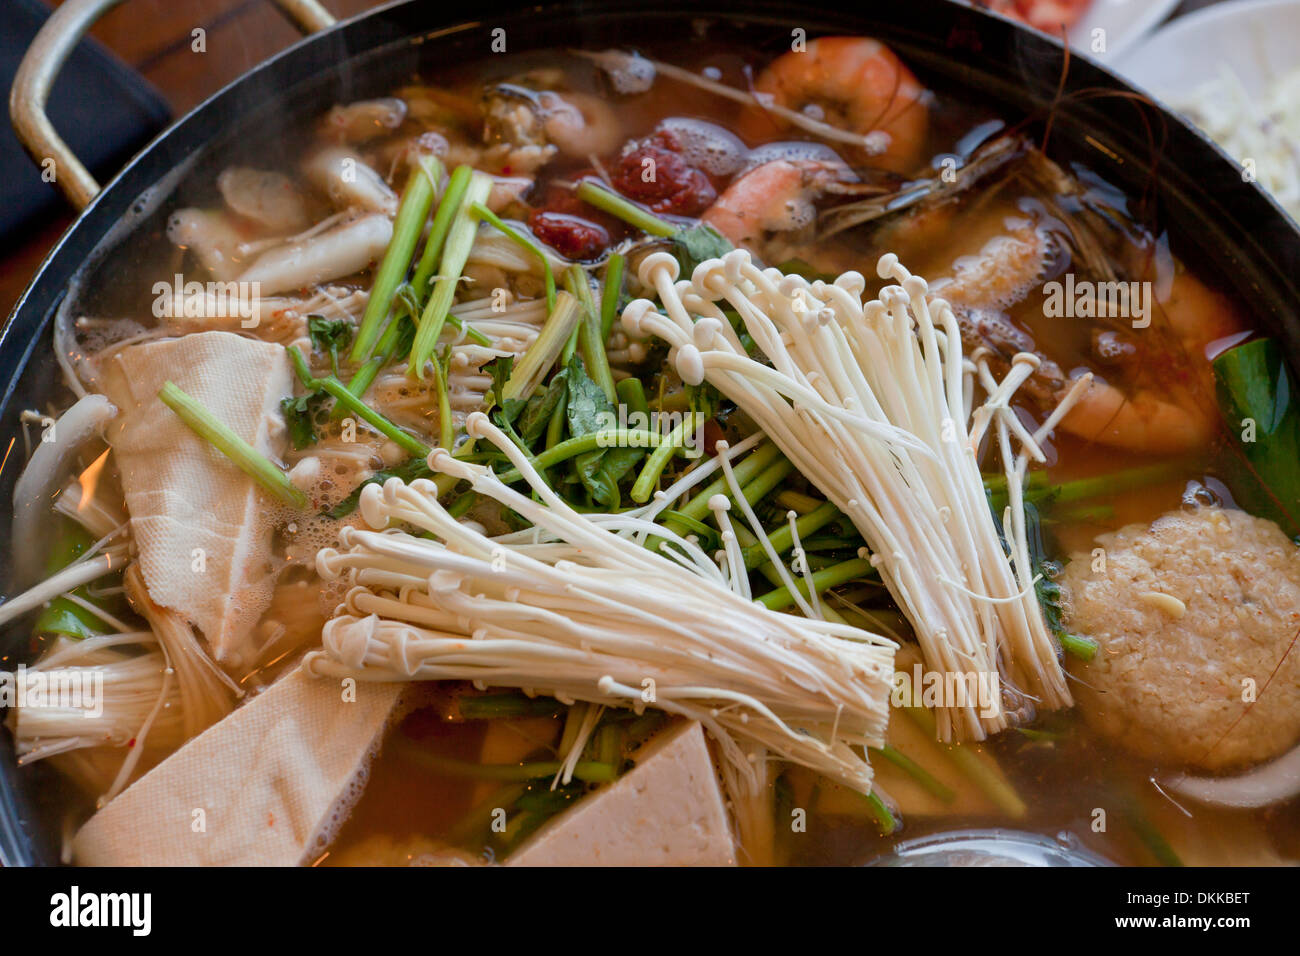 Soupe de fruits de mer épicés plat (Haemultang) sur table - Corée du Sud Banque D'Images